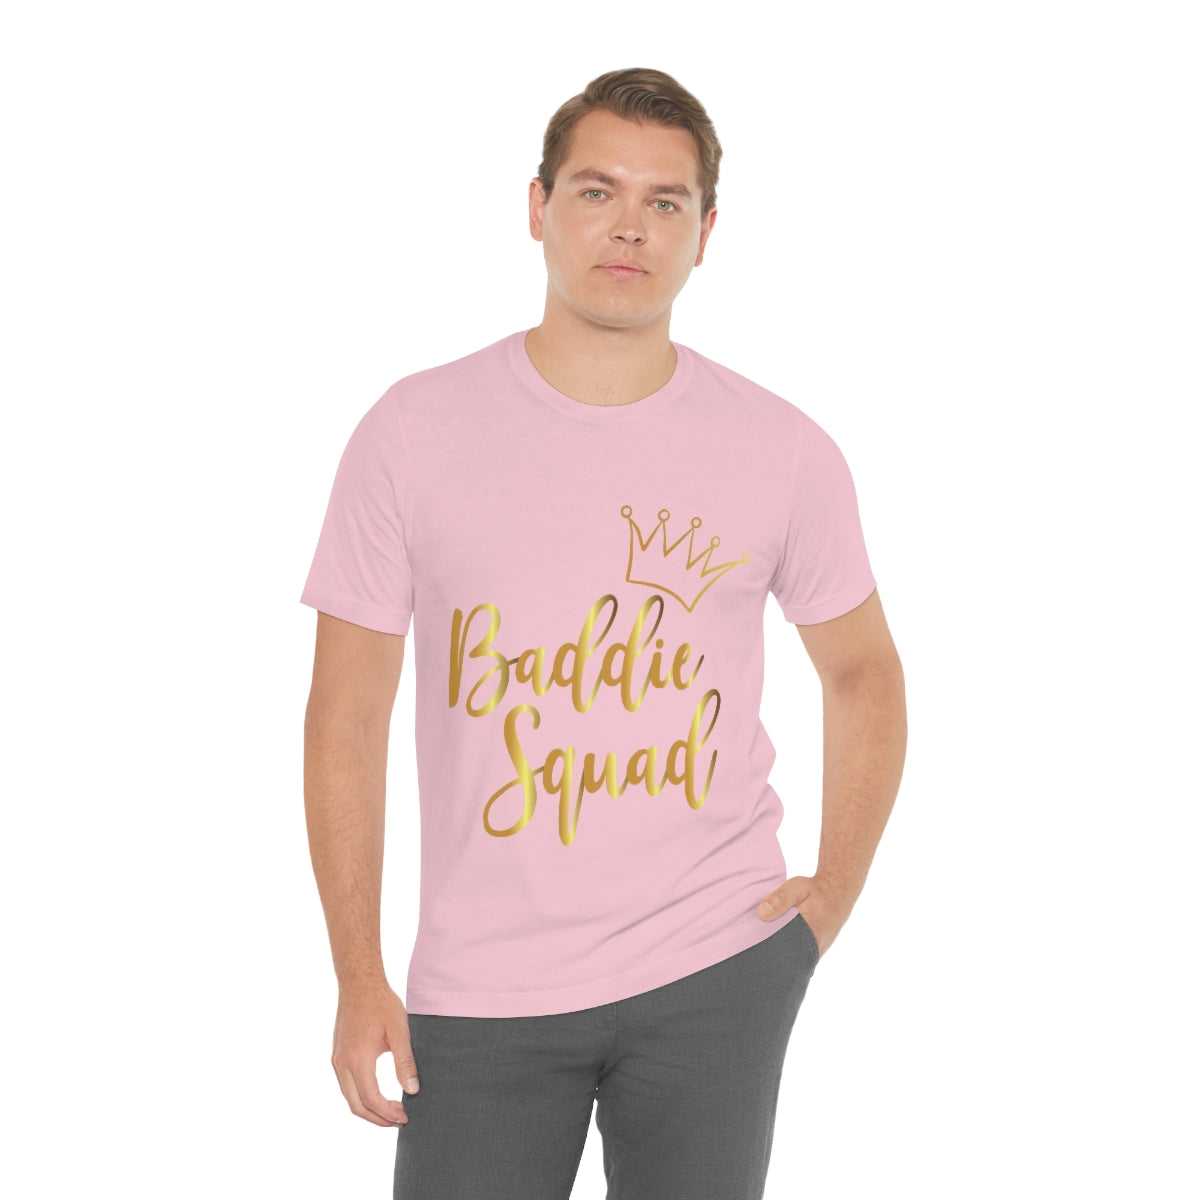 Affirmation Feminist Pro Choice T-Shirt Unisex Size, Baddie Squad Printify